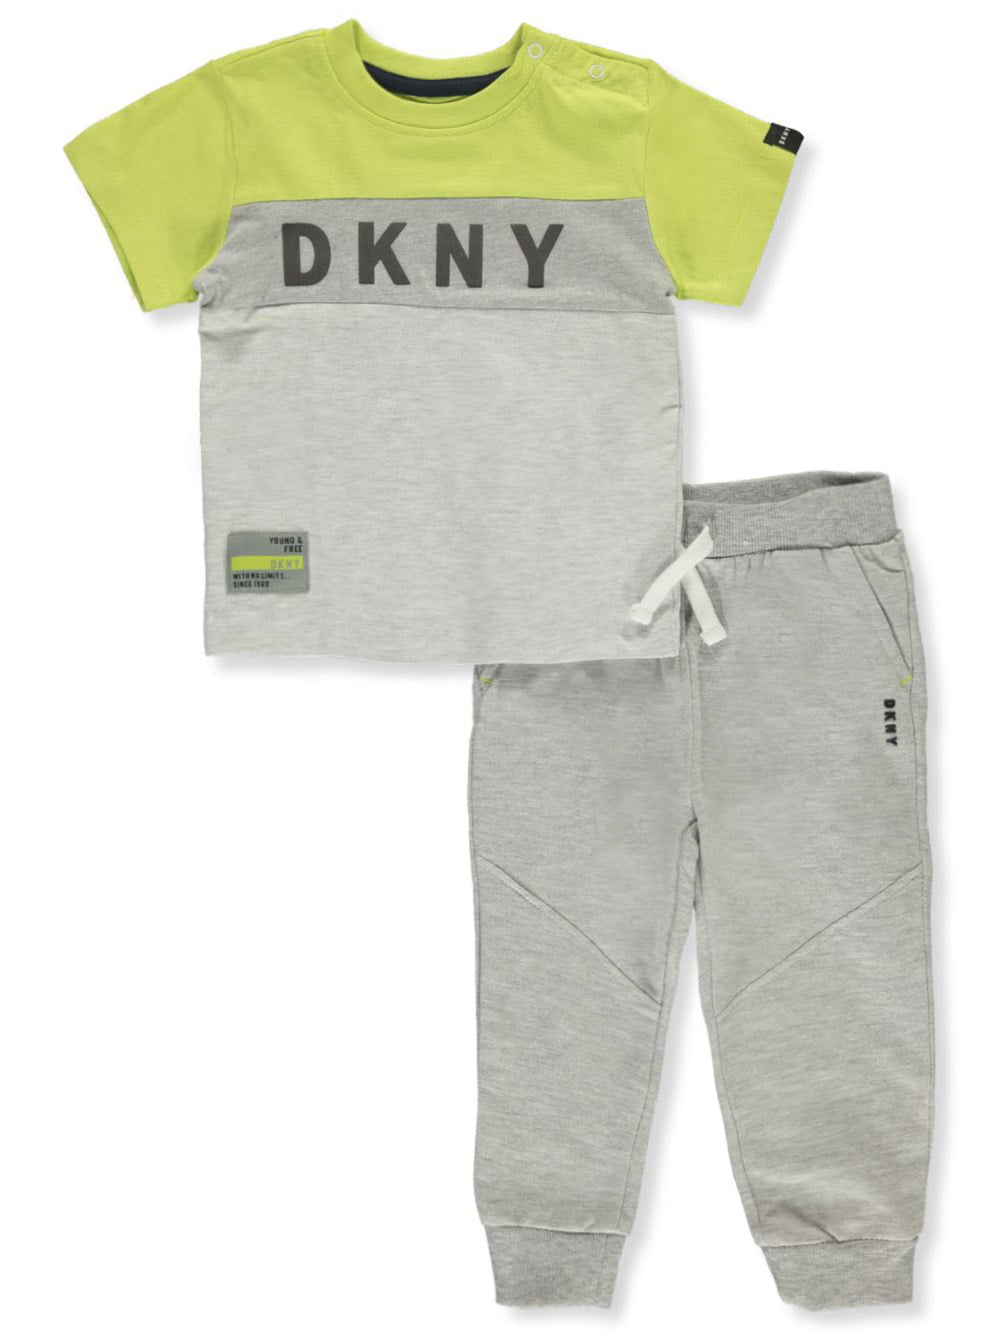 DKNY Boys 2 Piece Set 